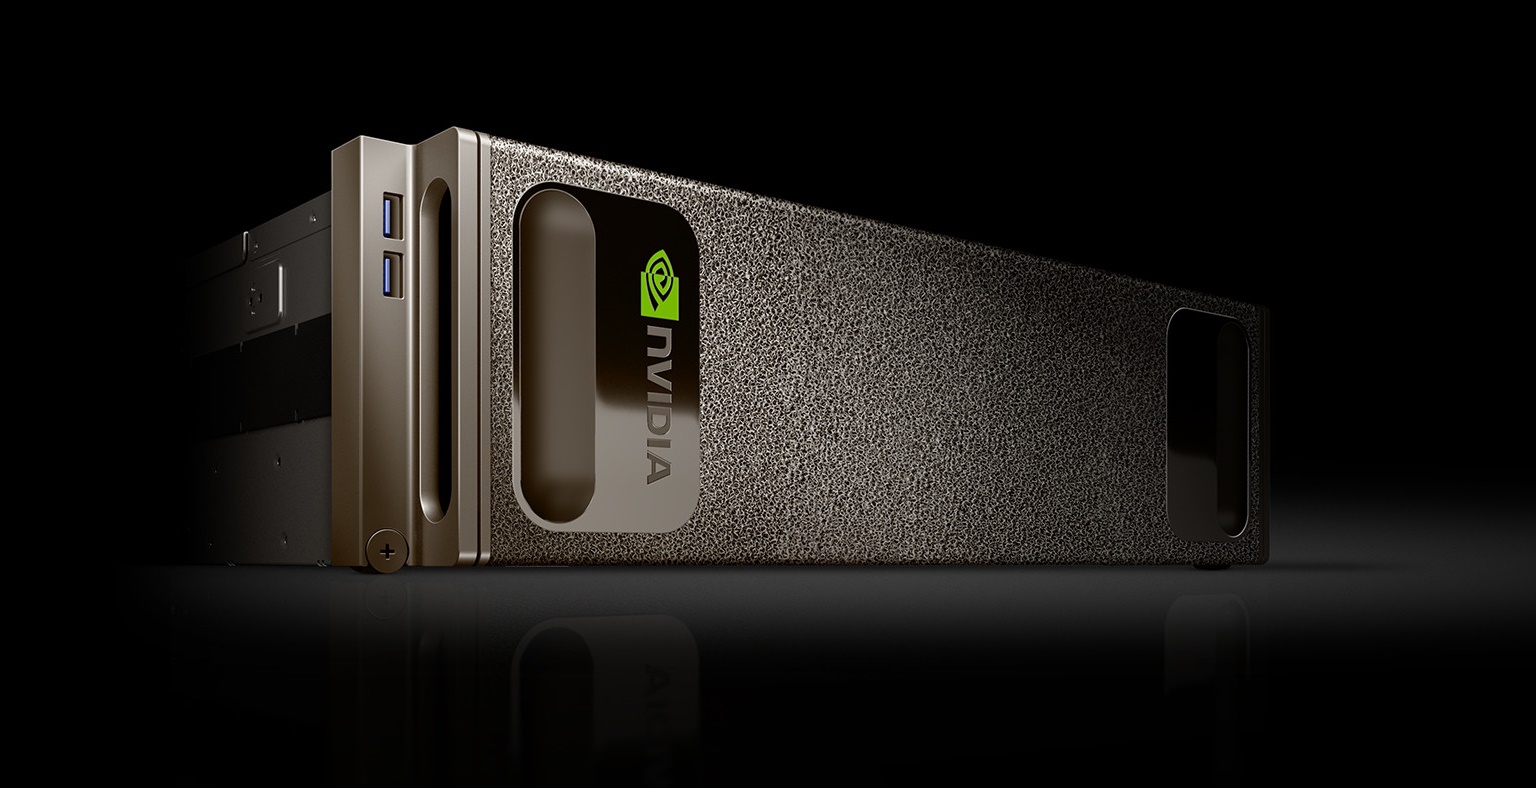 Η Nvidia ανακοίνωσε τον DGX-1, έναν ειδικά σχεδιασμένο Deep Learning Supercomputer